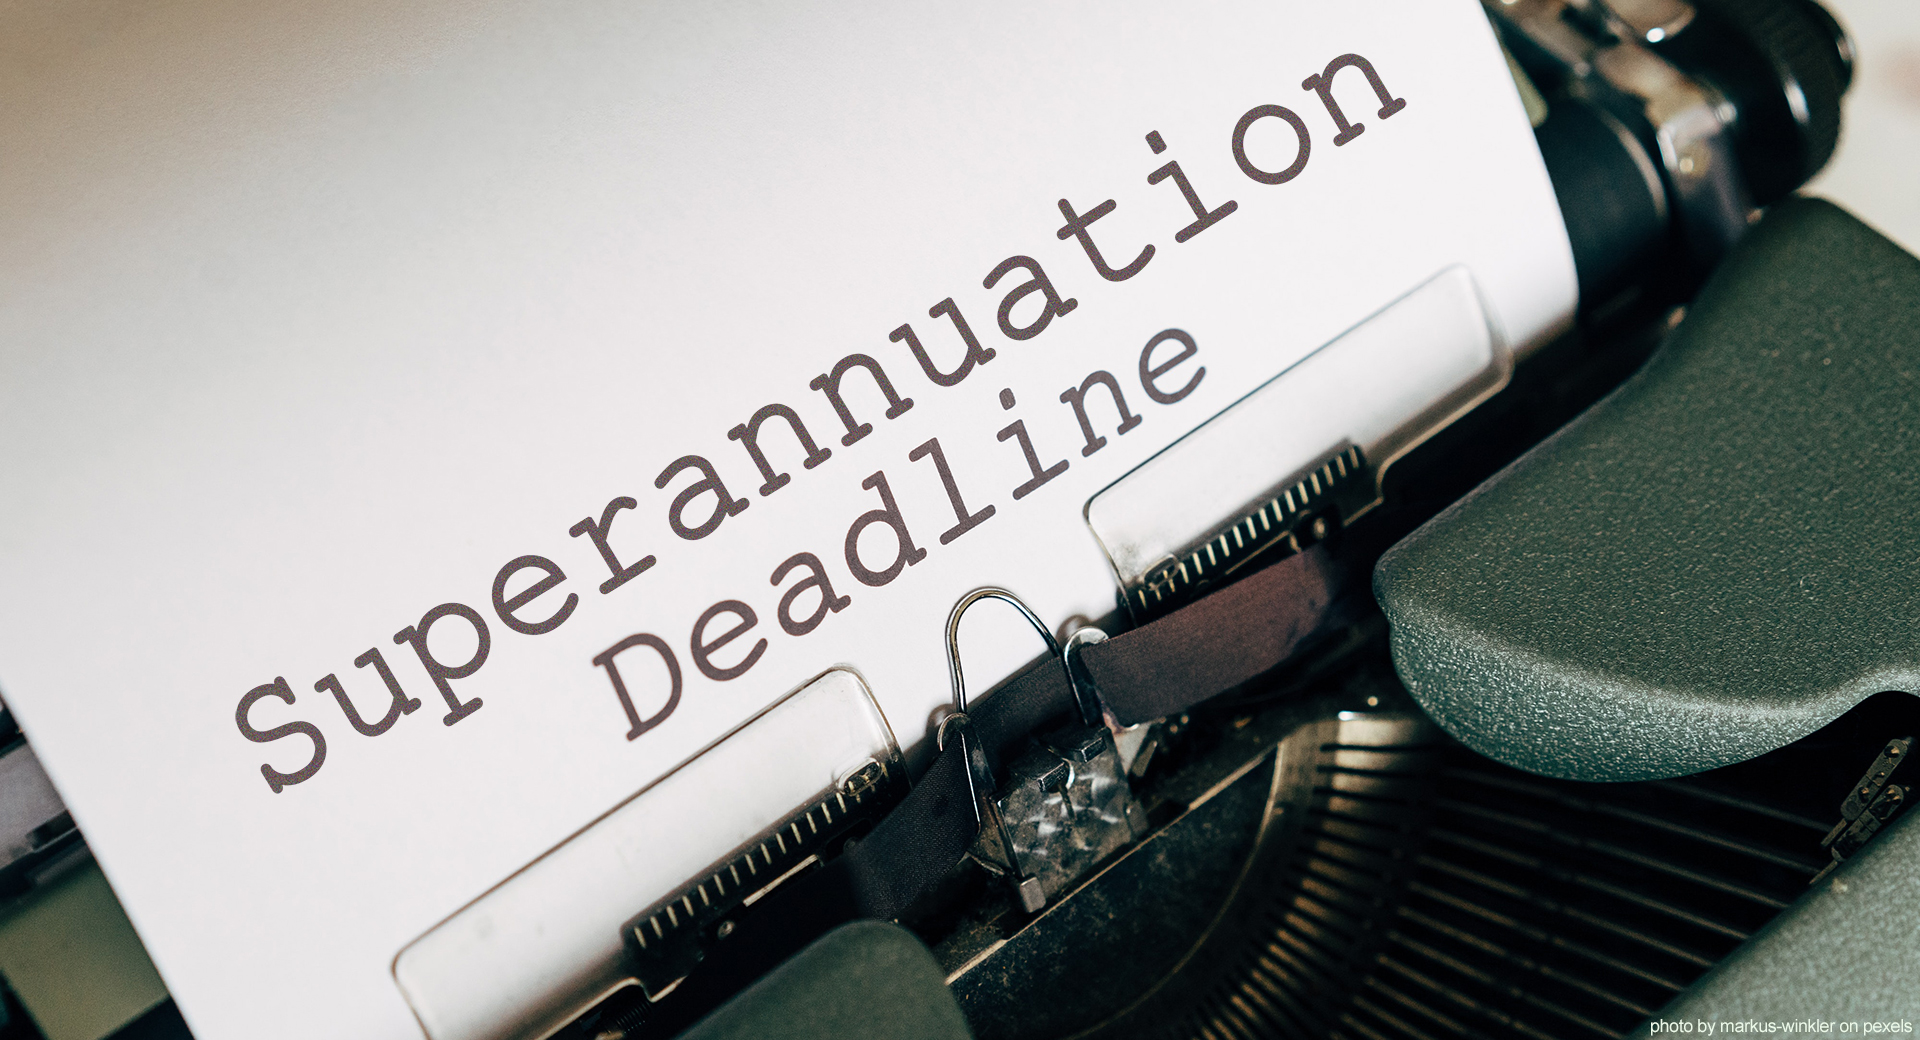 Superannuation Deadlines